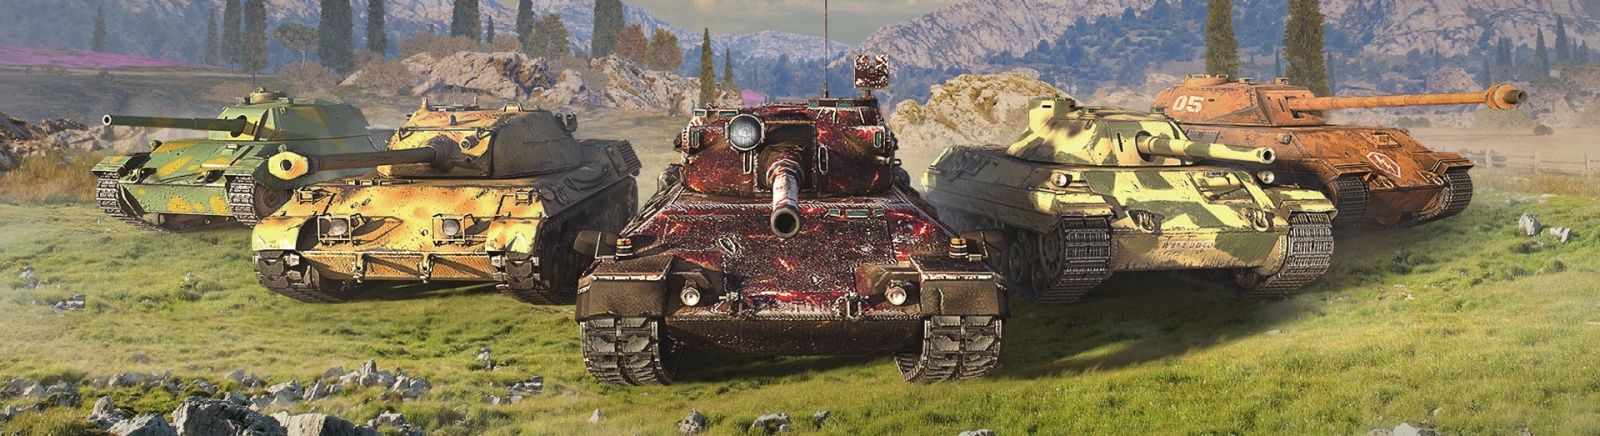 Оптимальное значение пинга в World of Tanks